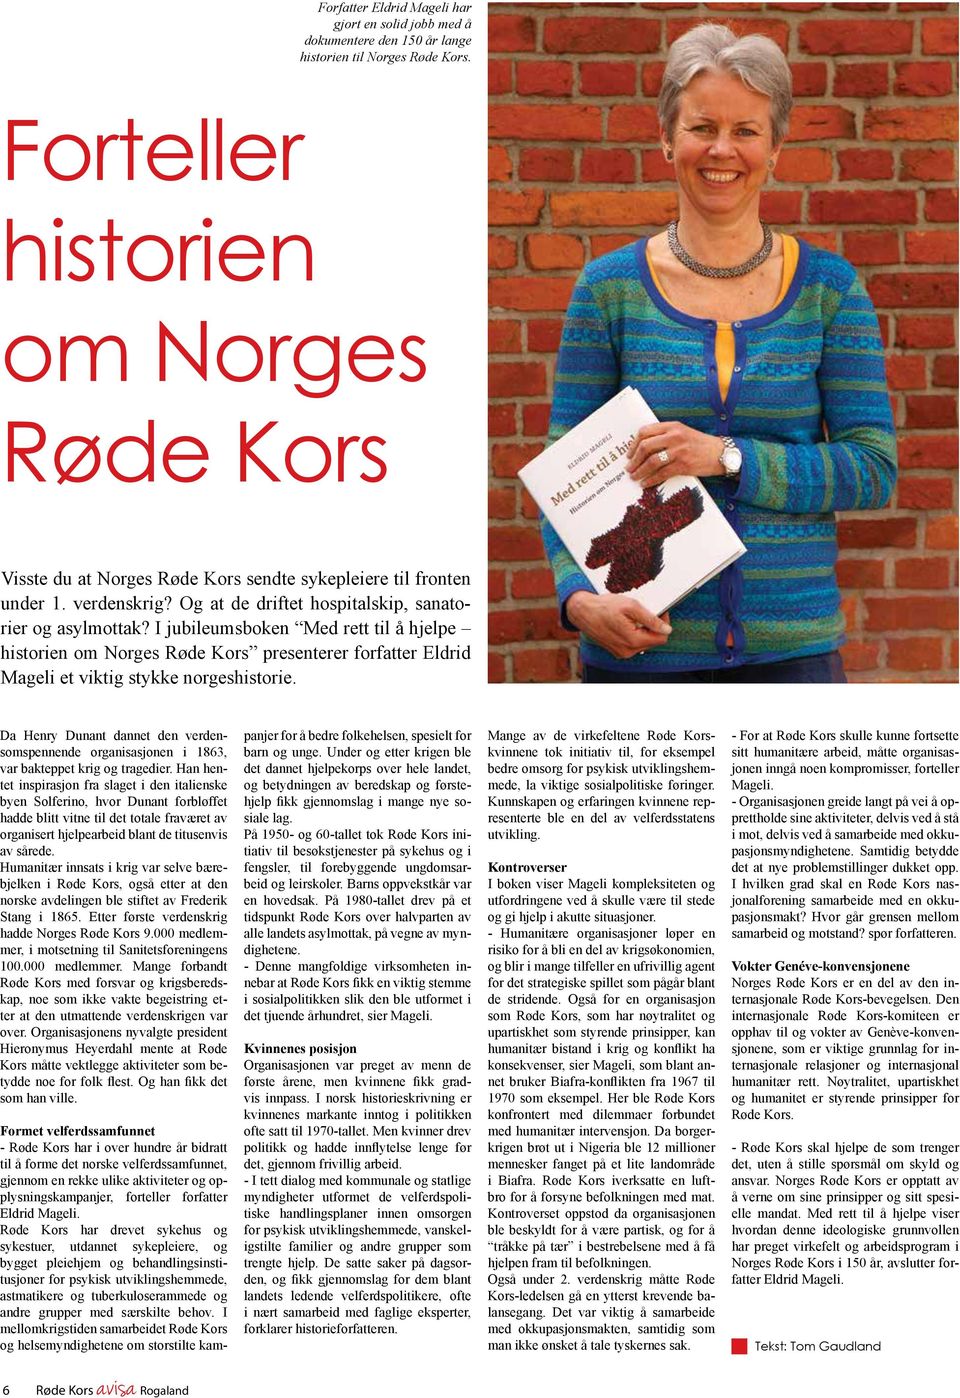 I jubileumsboken Med rett til å hjelpe historien om Norges Røde Kors presenterer forfatter Eldrid Mageli et viktig stykke norgeshistorie.